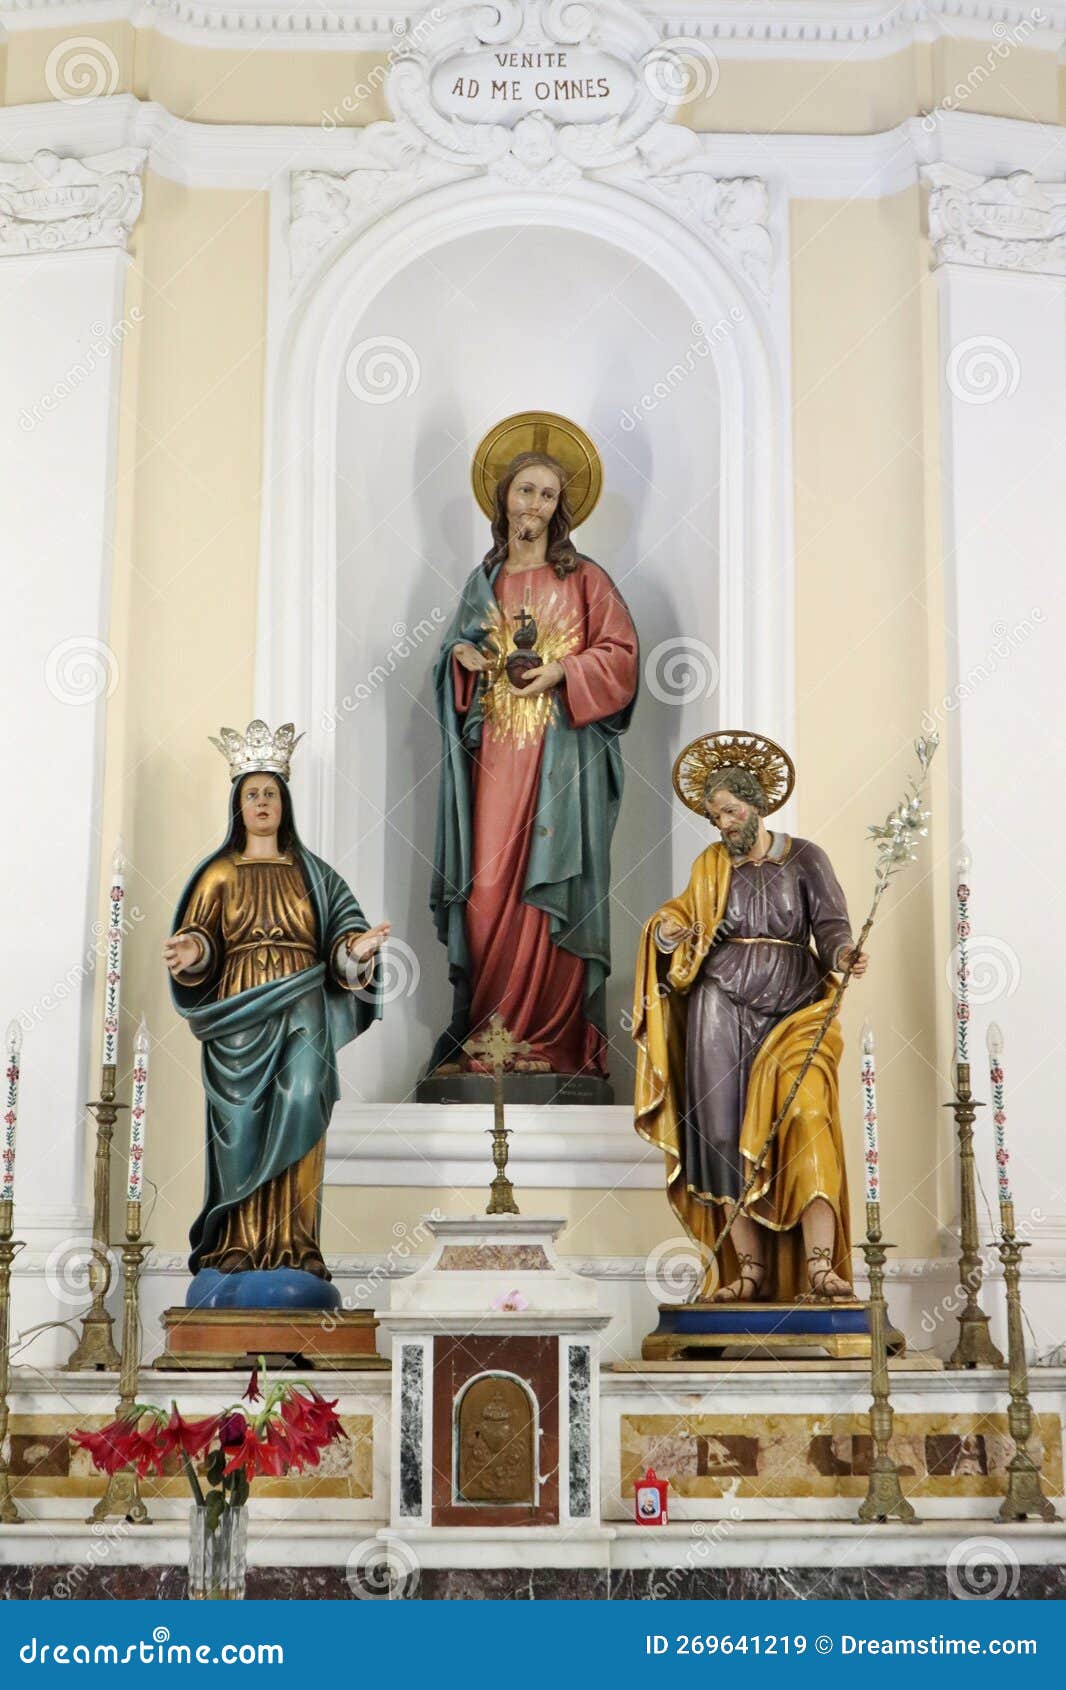 lacco ameno - statue della sacra famiglia nella chiesa di santa maria delle grazie